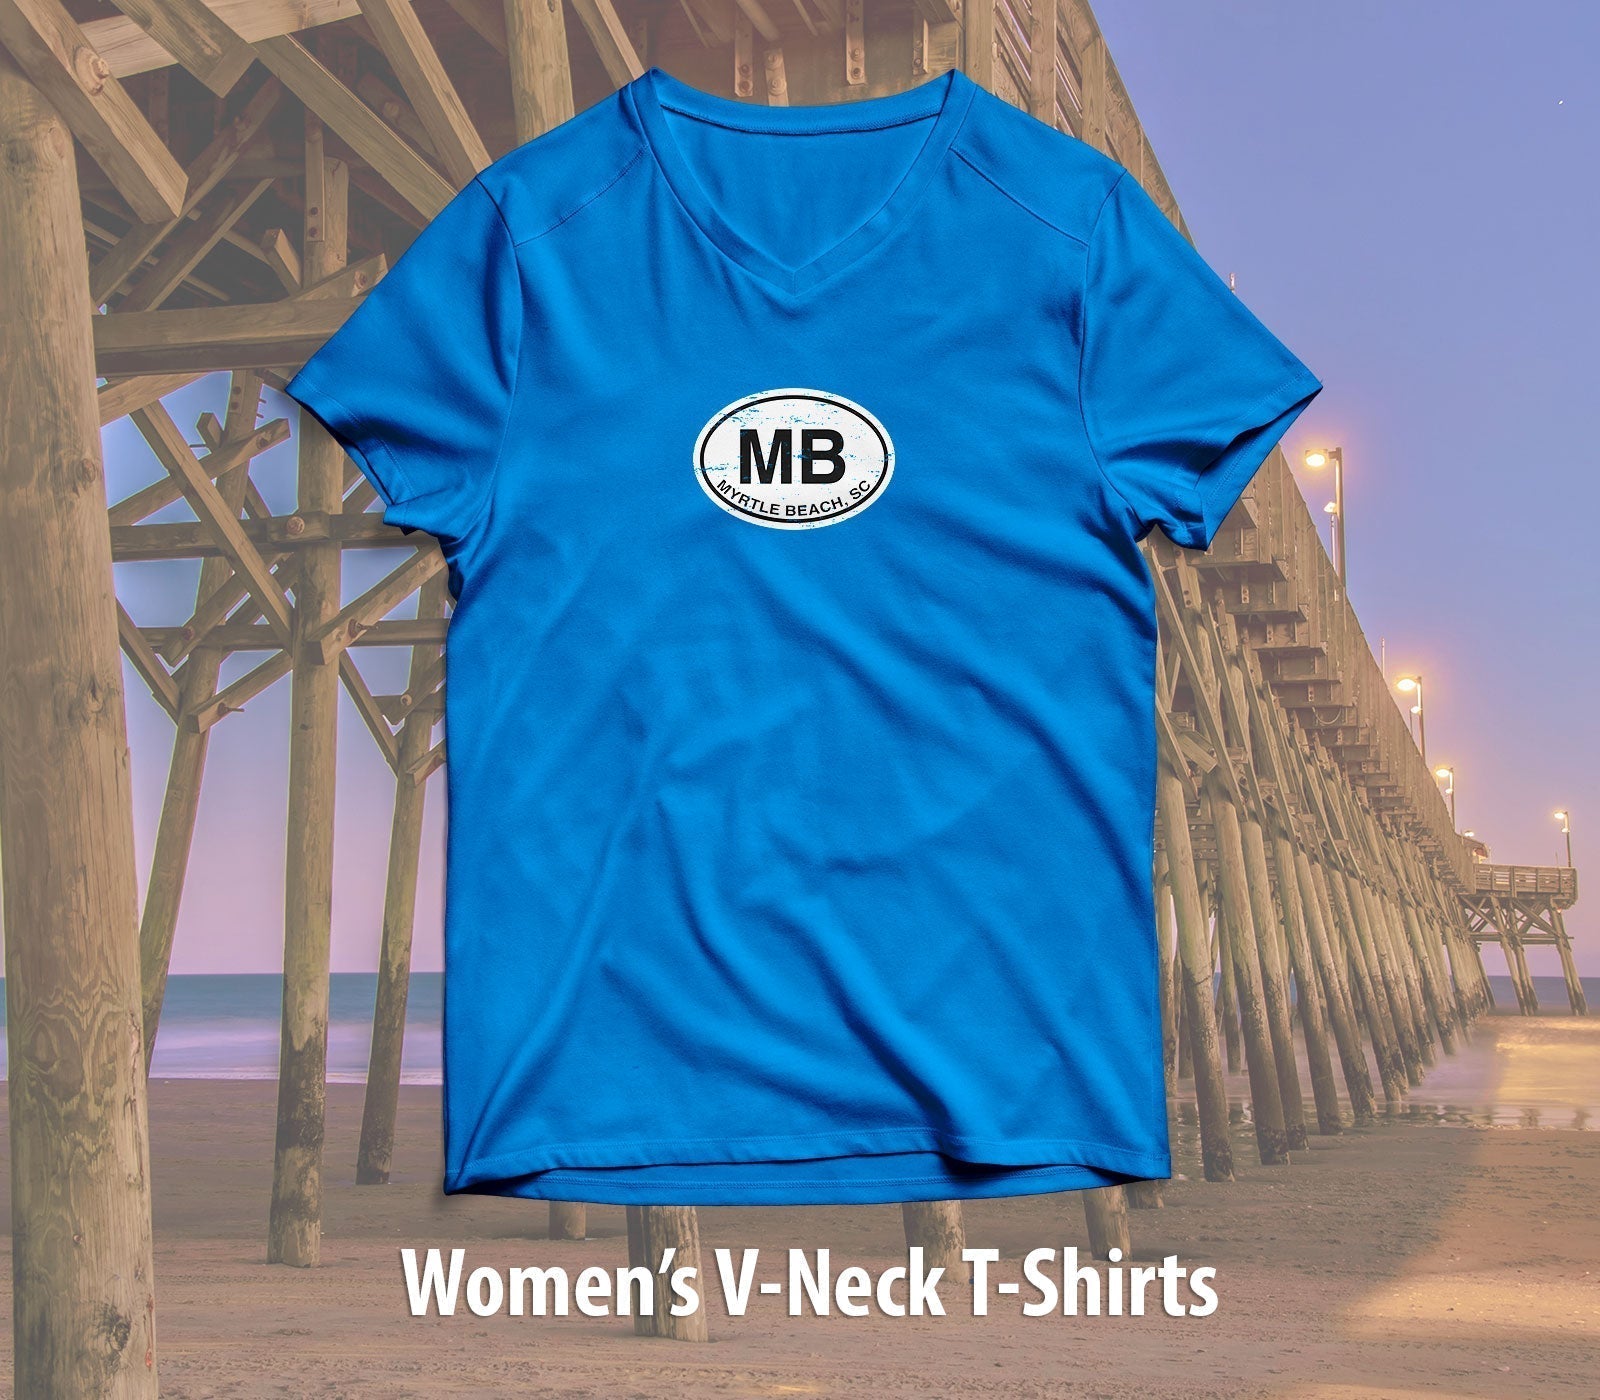 Myrtle Beach Women's V-Neck T-Shirt Souvenir - My Destination Location